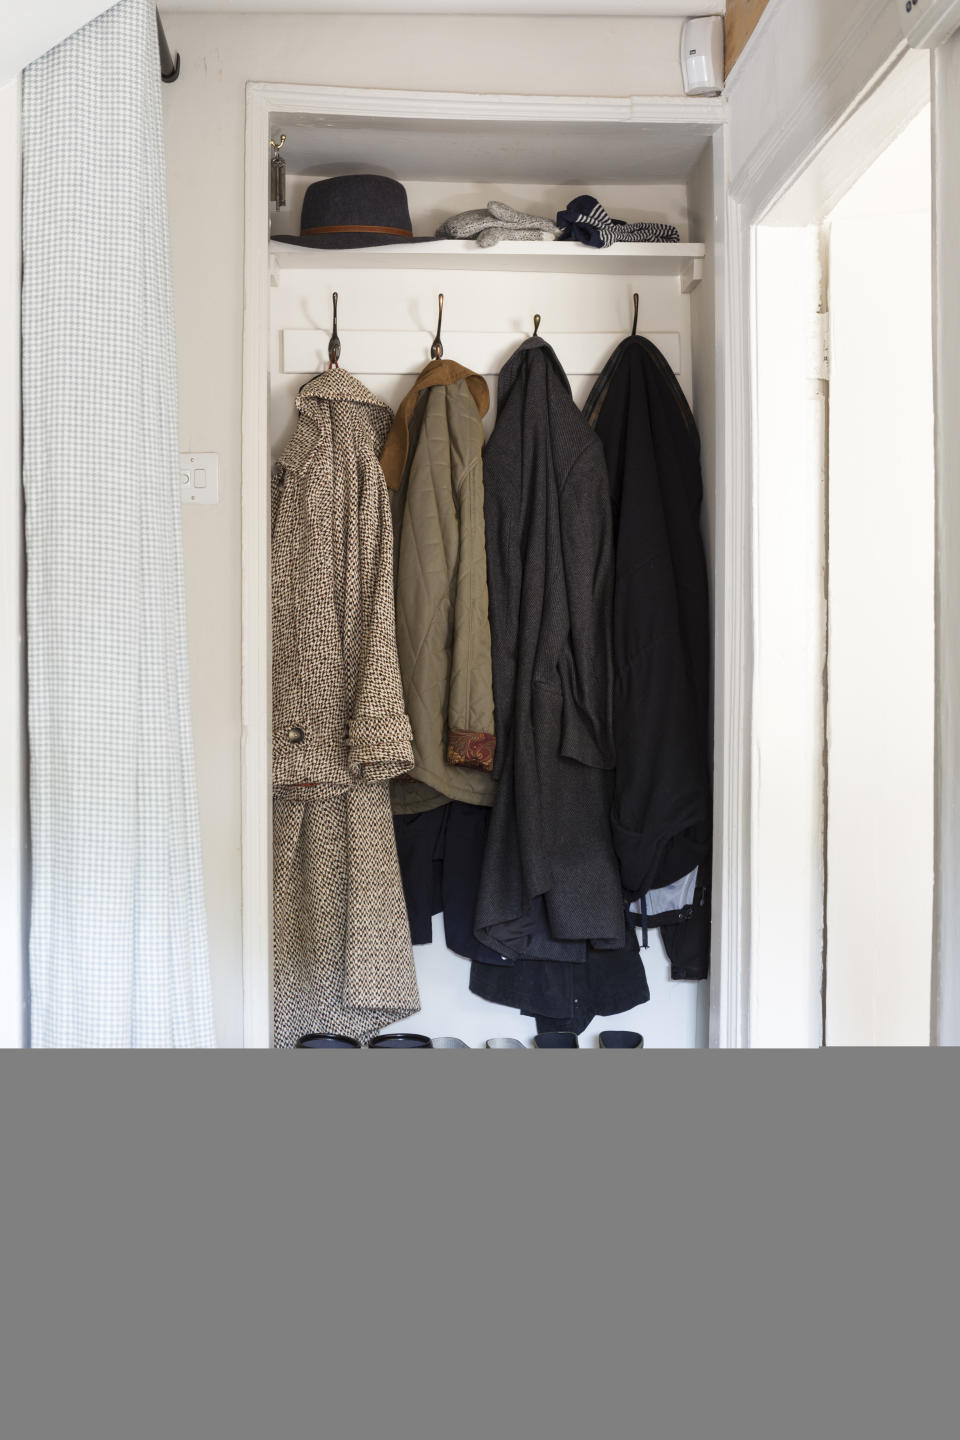 Convert a closet into a mudroom